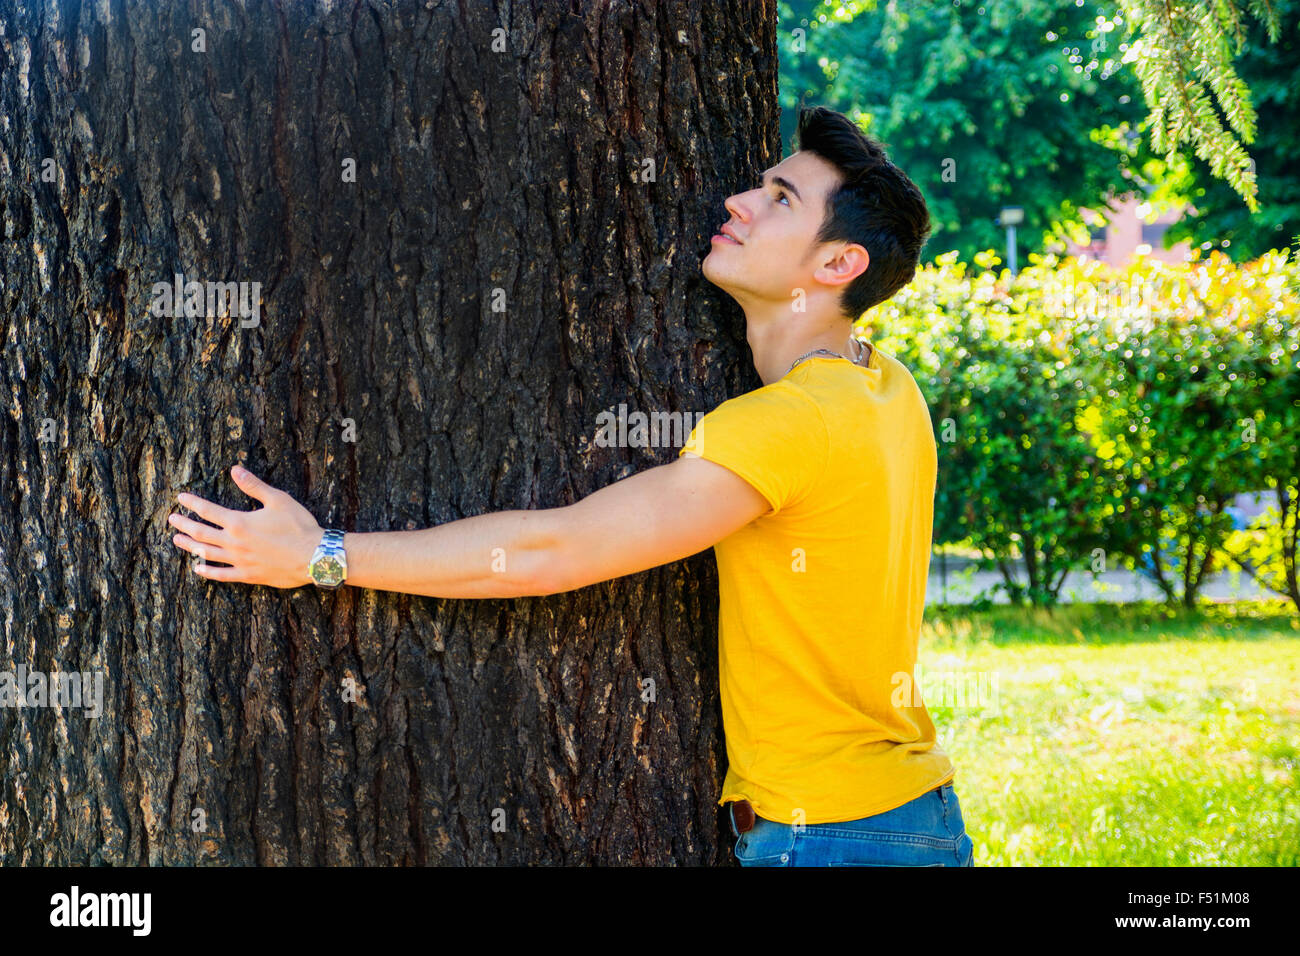 Lächelnd hübschen jungen Mann umarmt einen Baum nach oben, im Stadtpark Stockfoto